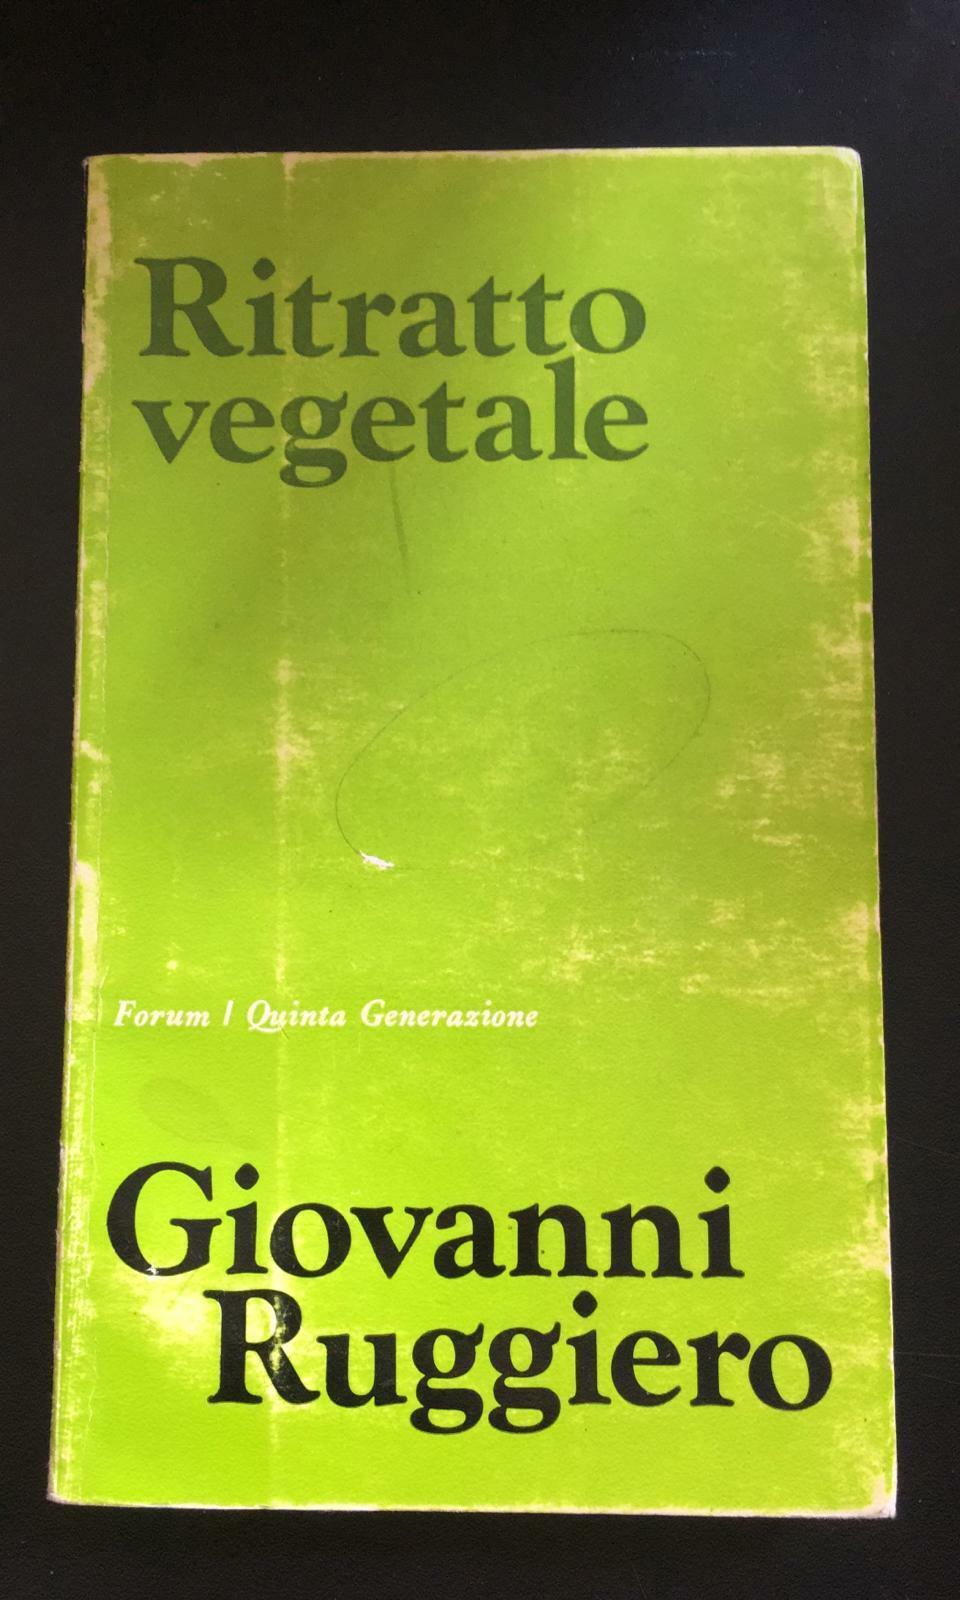 Ritratto vegetale - Giovanni Ruggiero,  Forum/ Quinta Generazione - P